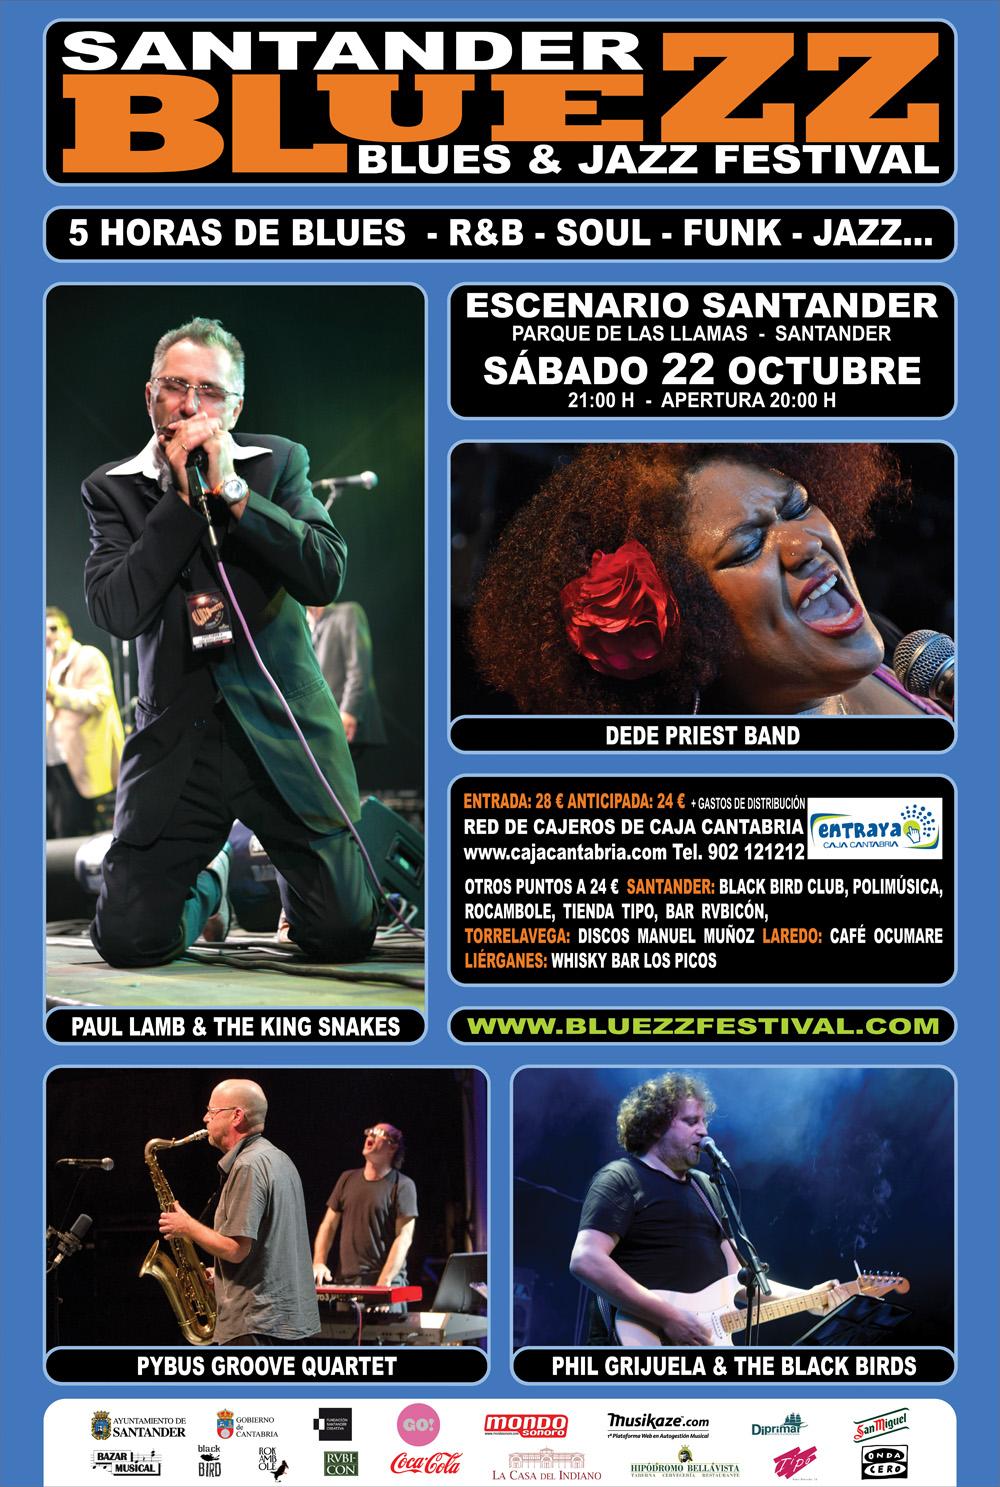 El Bluezz Festival llega a Santander el 22 de Octubre